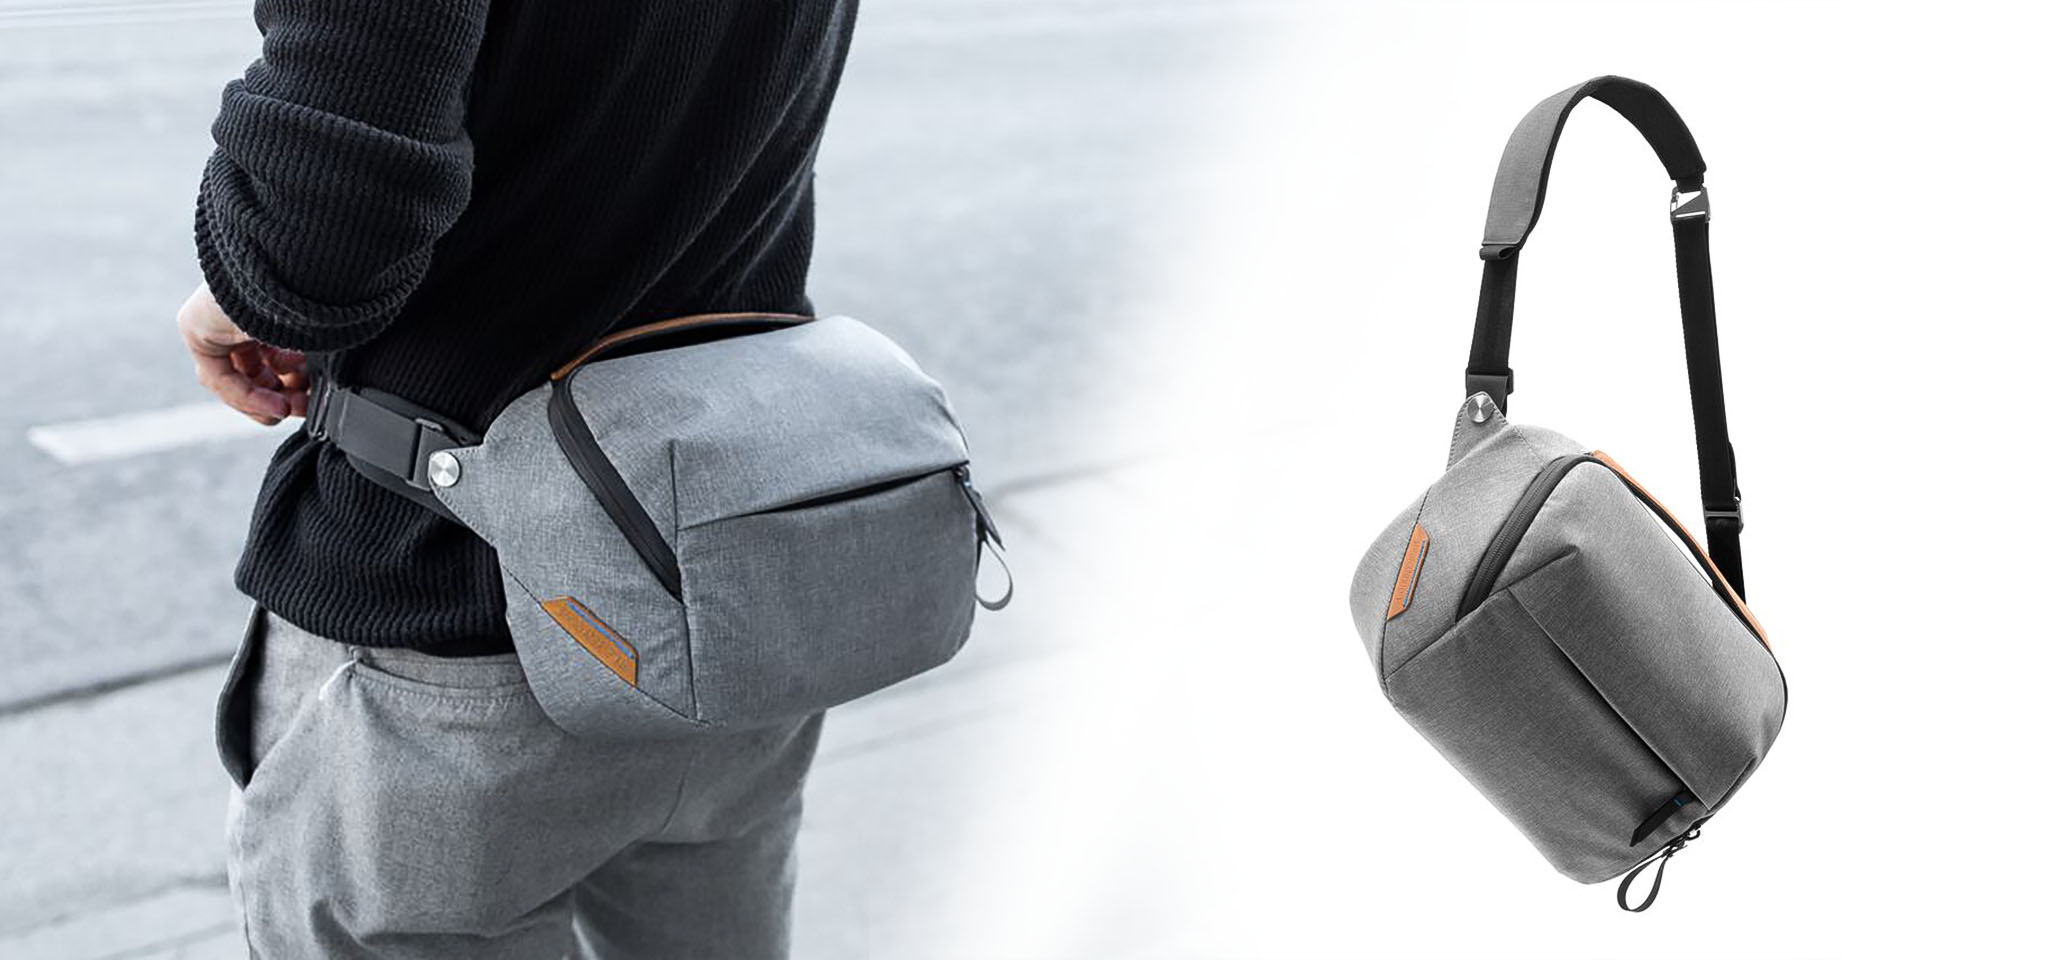 Peak Design 5L Everyday Sling: Túi đeo ngang eo, nhỏ và nhẹ, chứa được tablet 11", giá $100